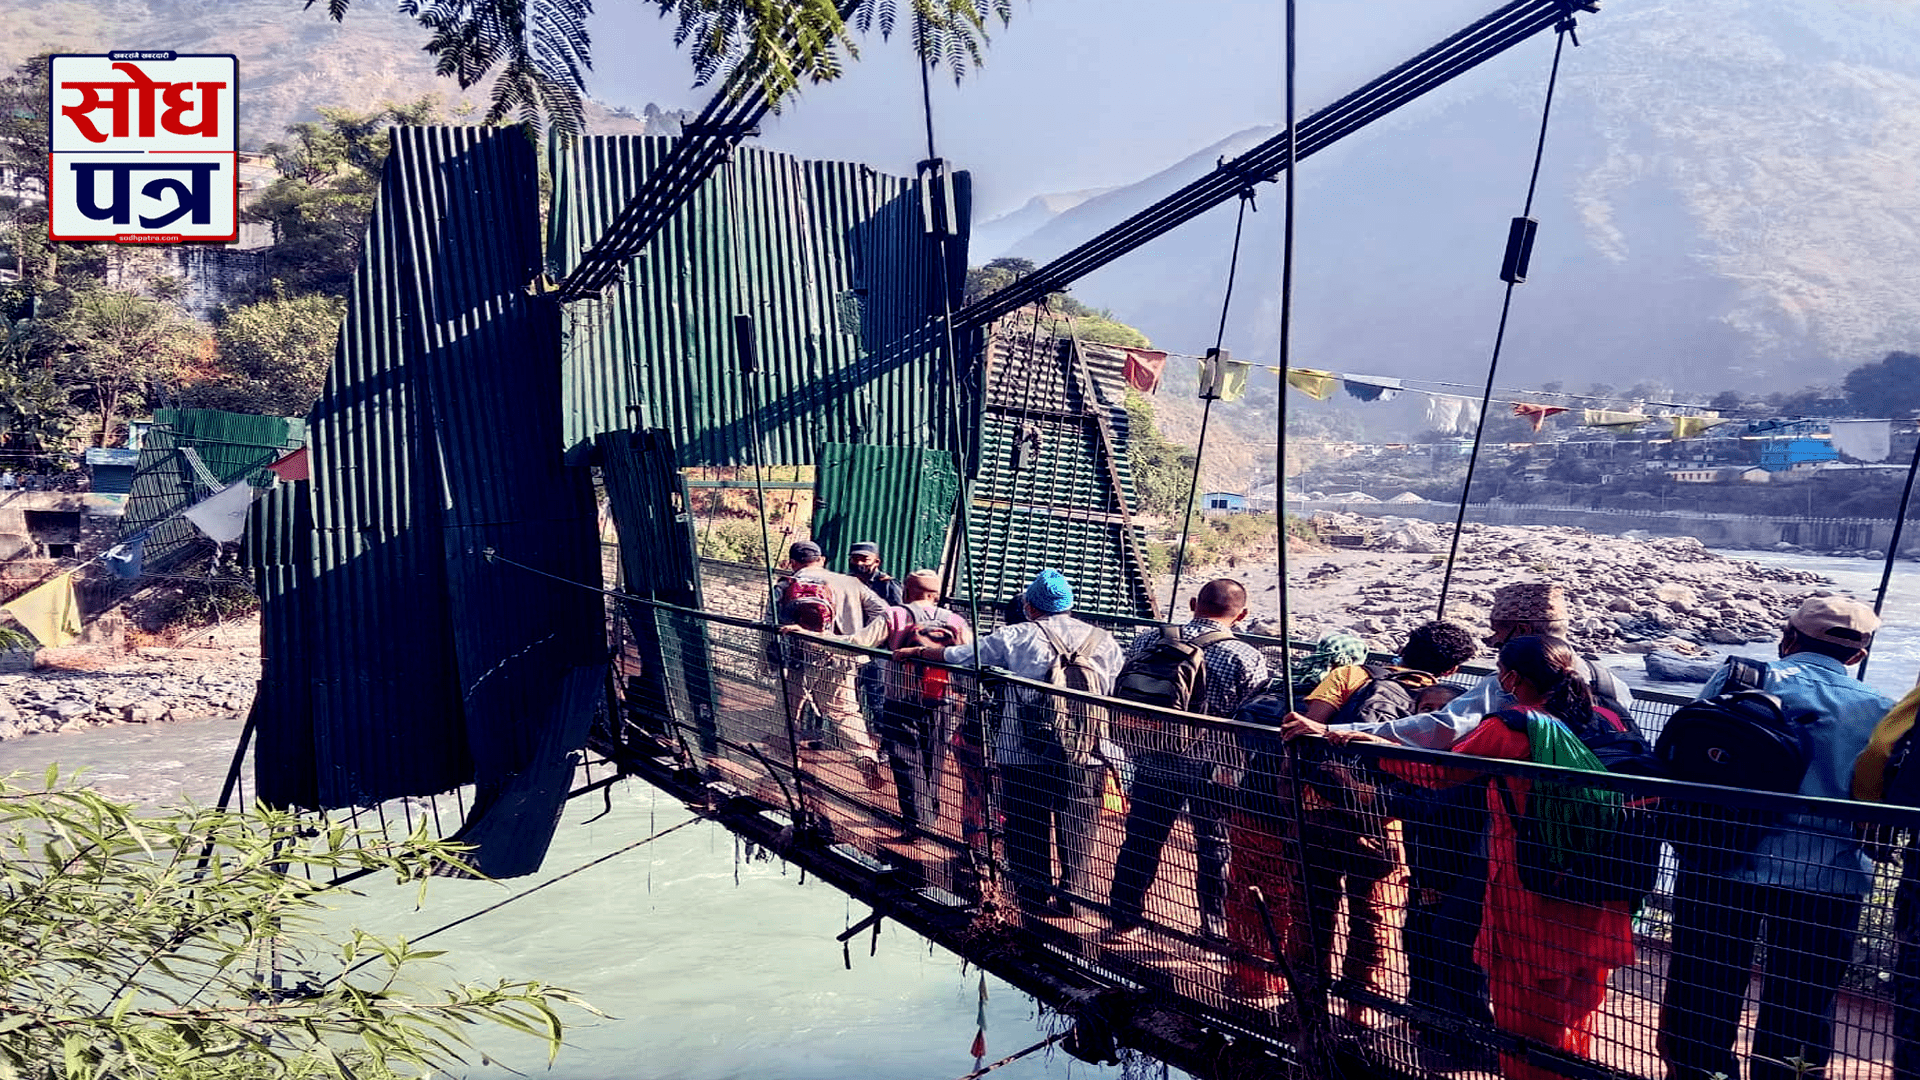 व्यवशाय धरापमा परेको भन्दै भारतीय व्यापारीद्वारा नेपाली सिमानामा रहेको पुल खोल्न आग्रह